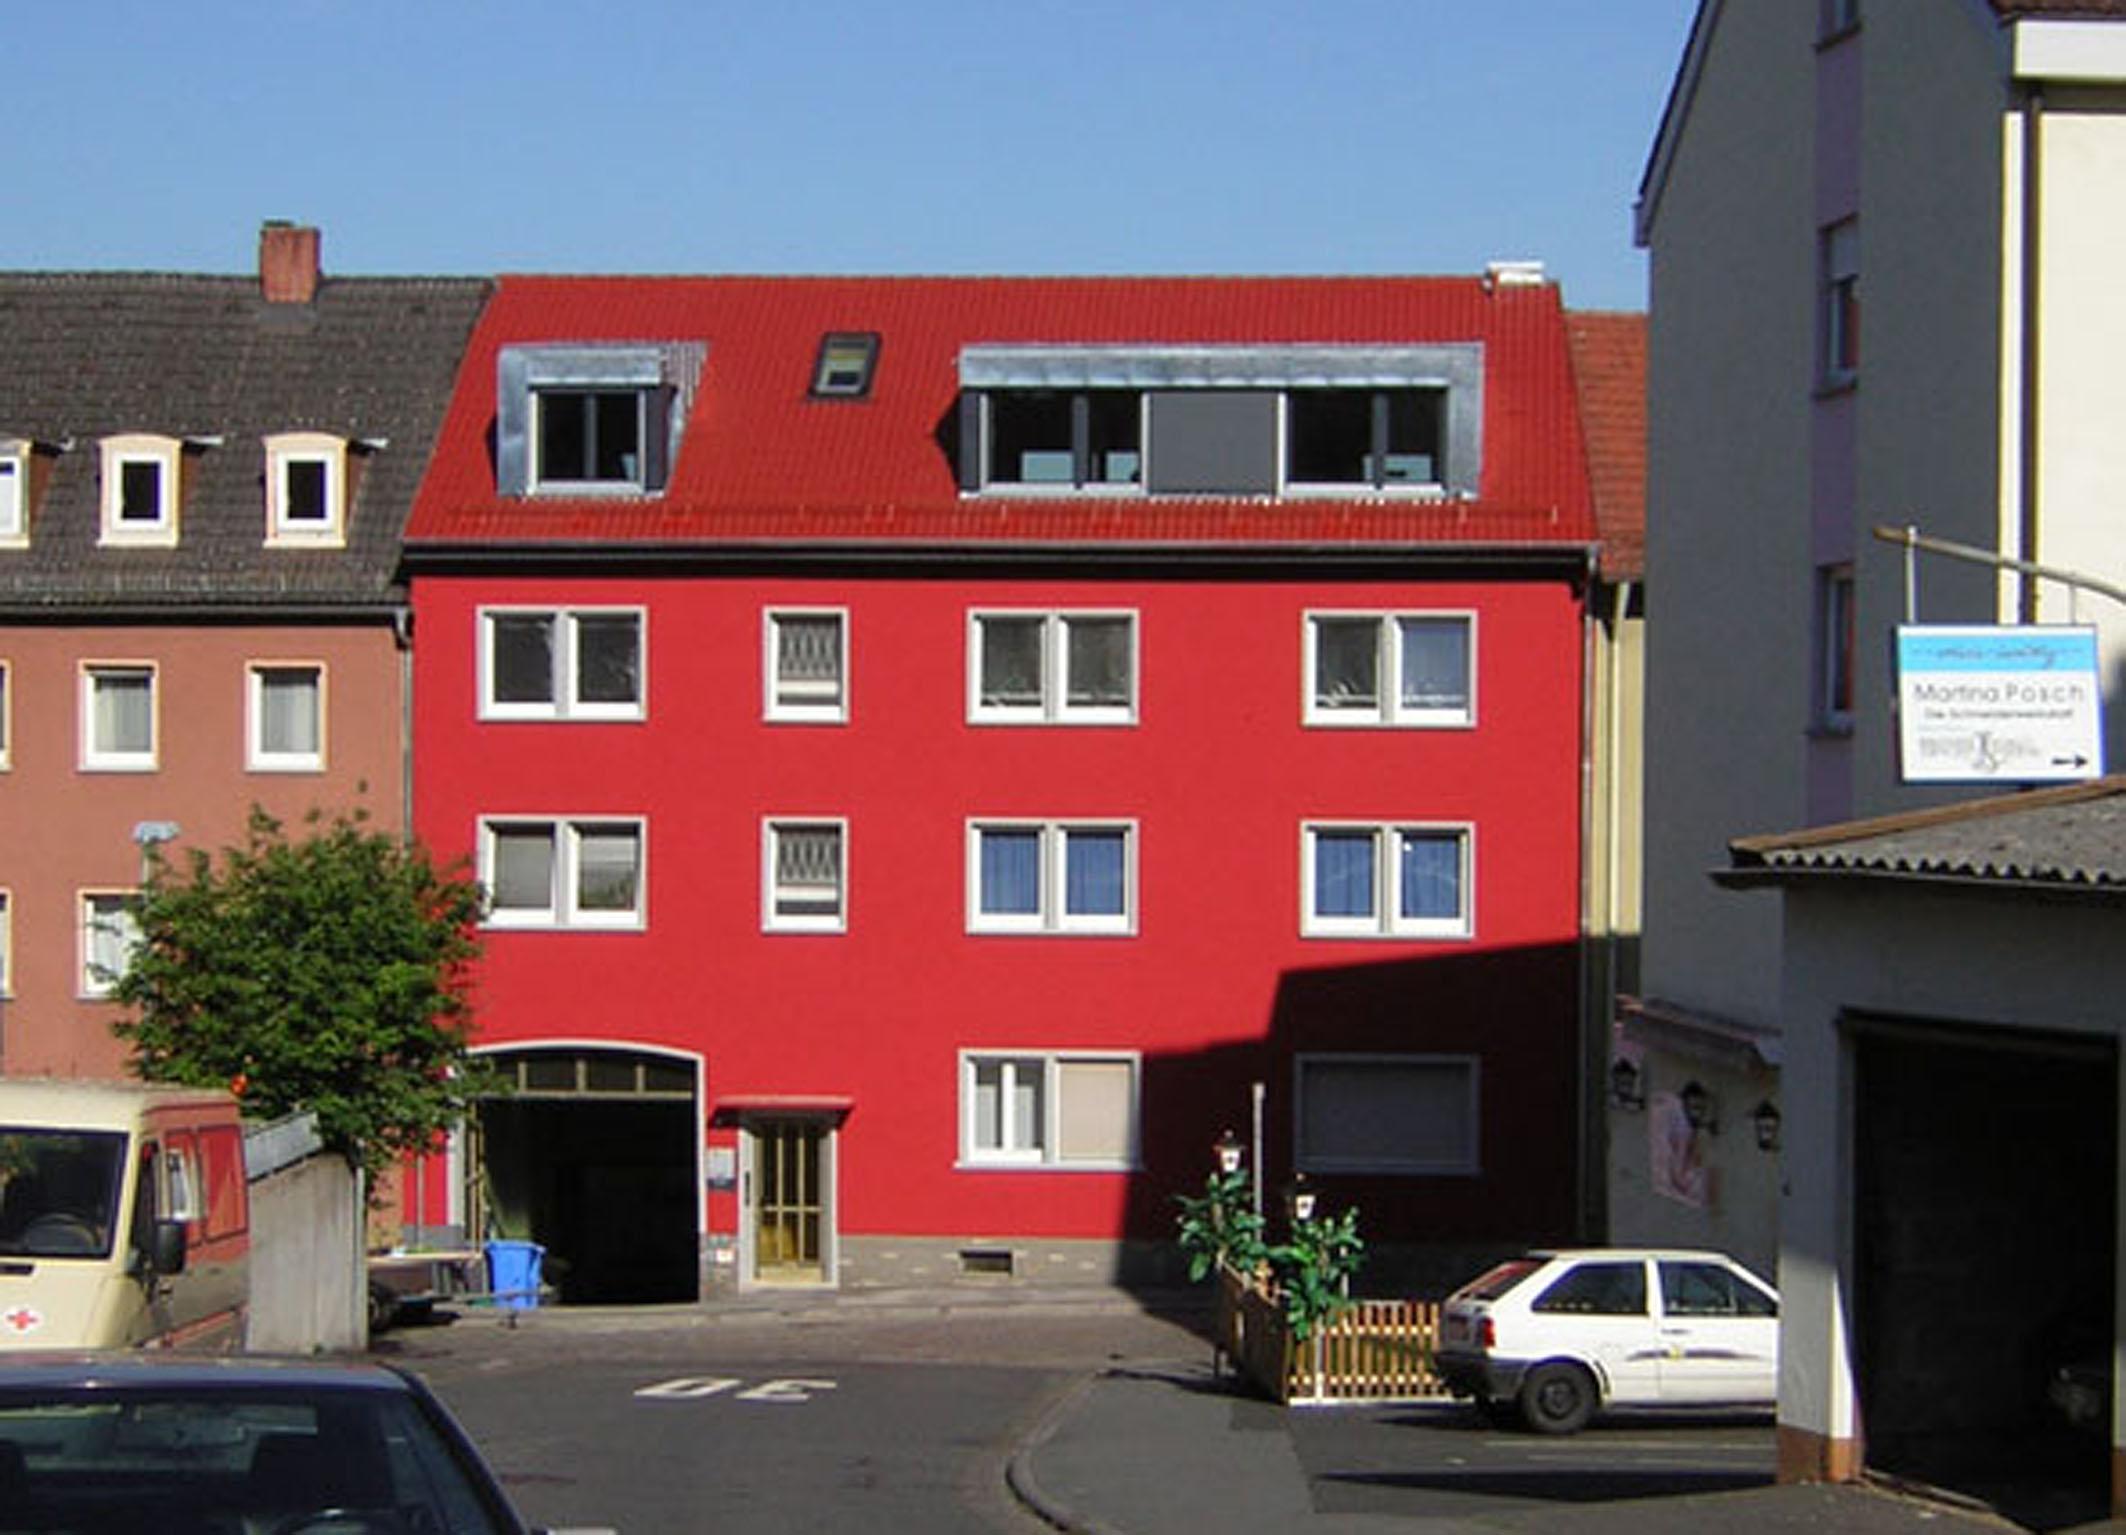 Modernisierung und Dachausbau 60er Jahre Wohnhaus #dachausbau ©Resonatorcoop